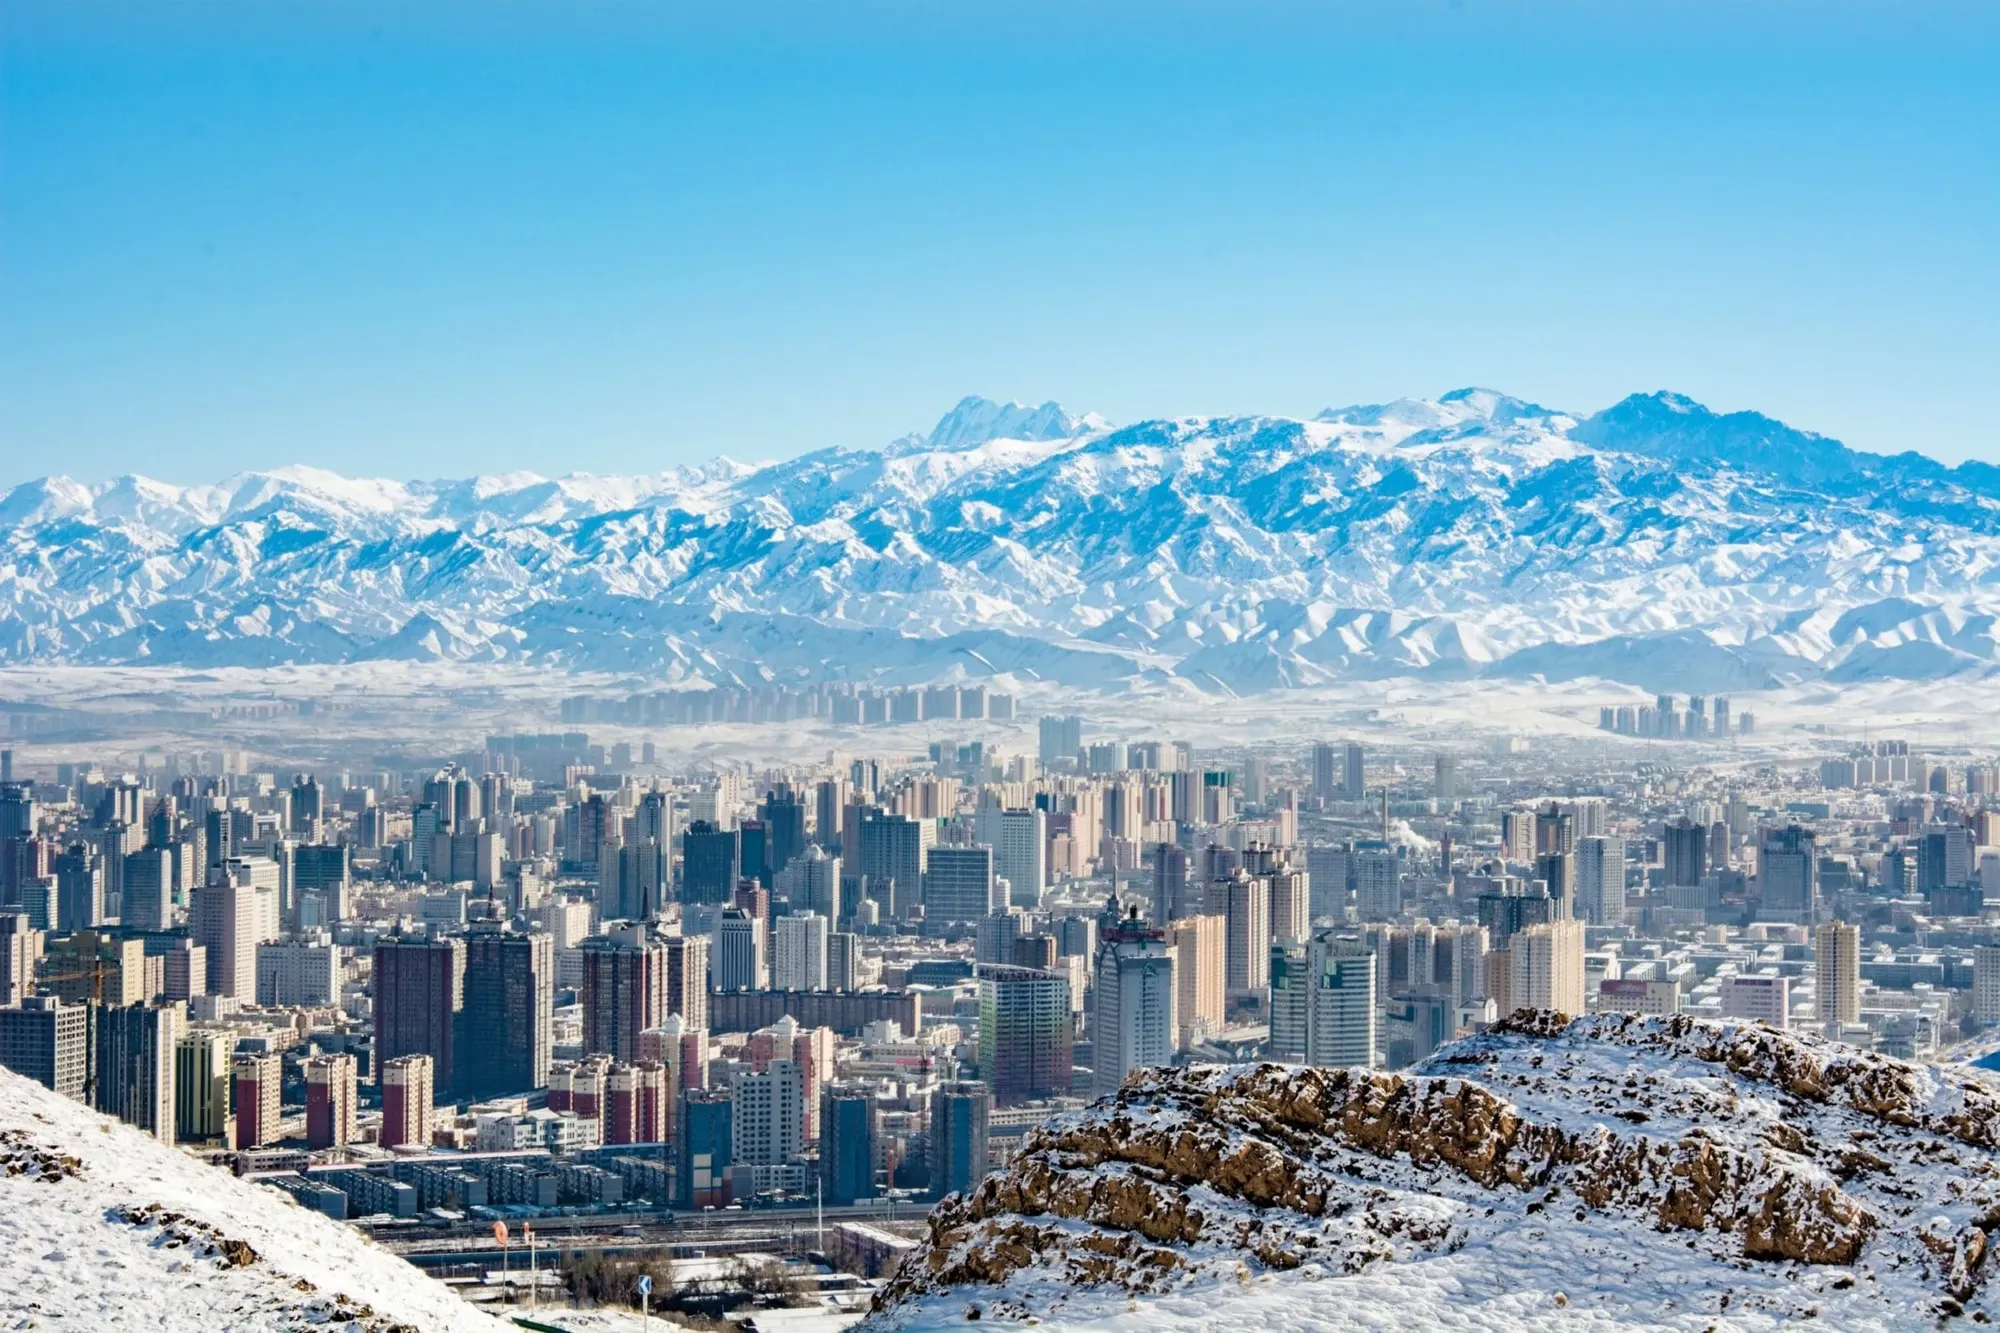 Urumqi | Northwest China Region, China - Rated 5.2